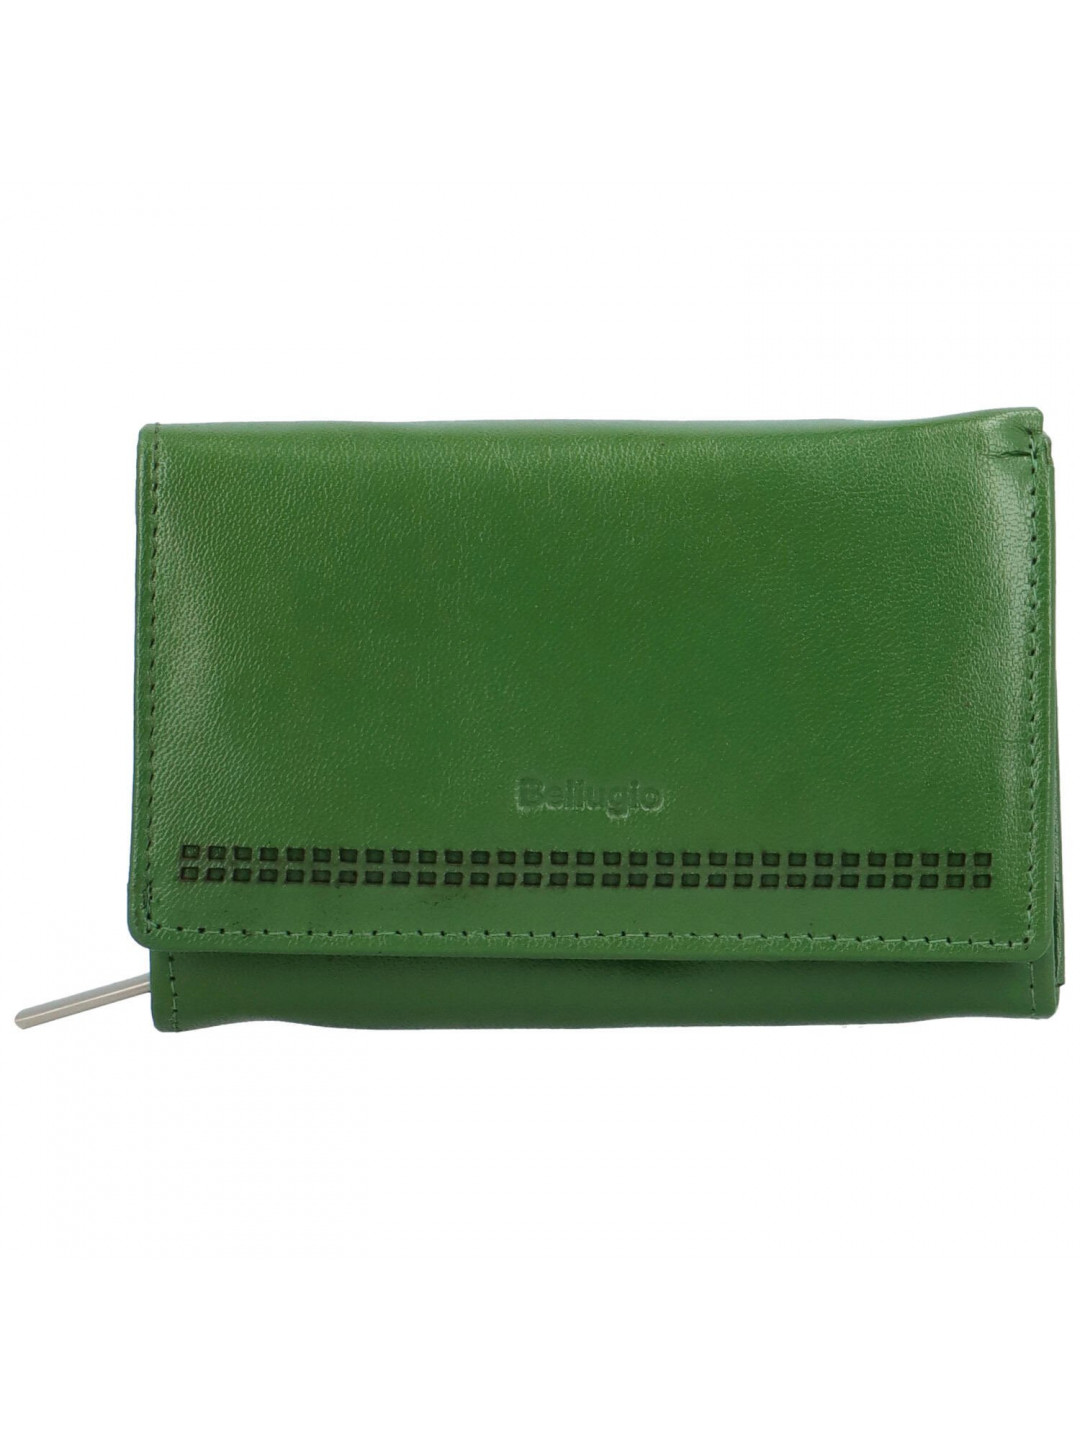 Dámská kožená malá peněženka Bellugio Gialla tmavě zelená